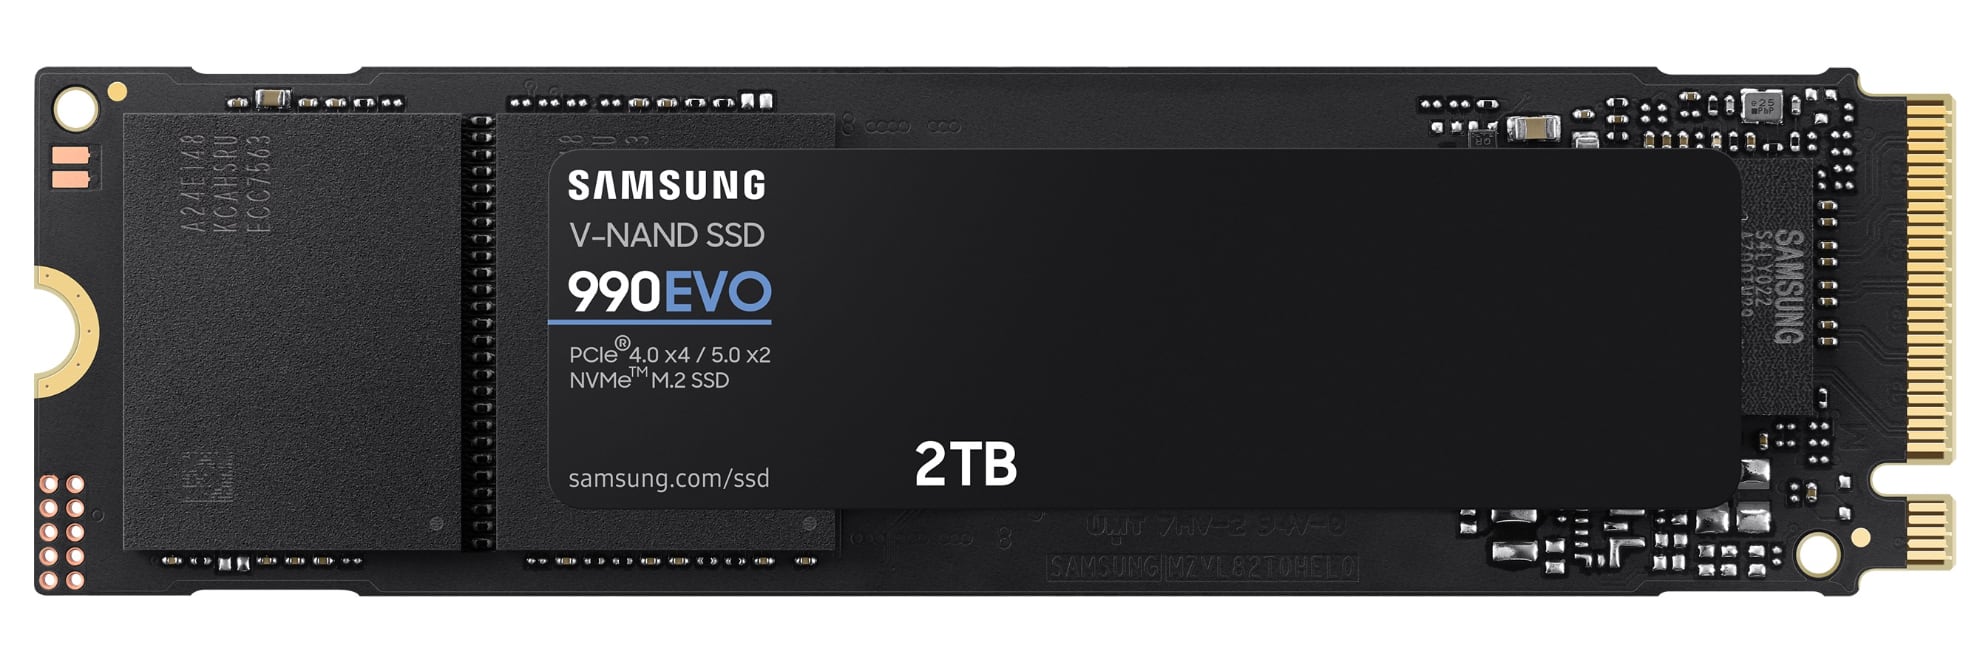 Samsung annuncia l'SSD 990 EVO ad alta velocità, al costo di 210 dollari per 2 TB-2